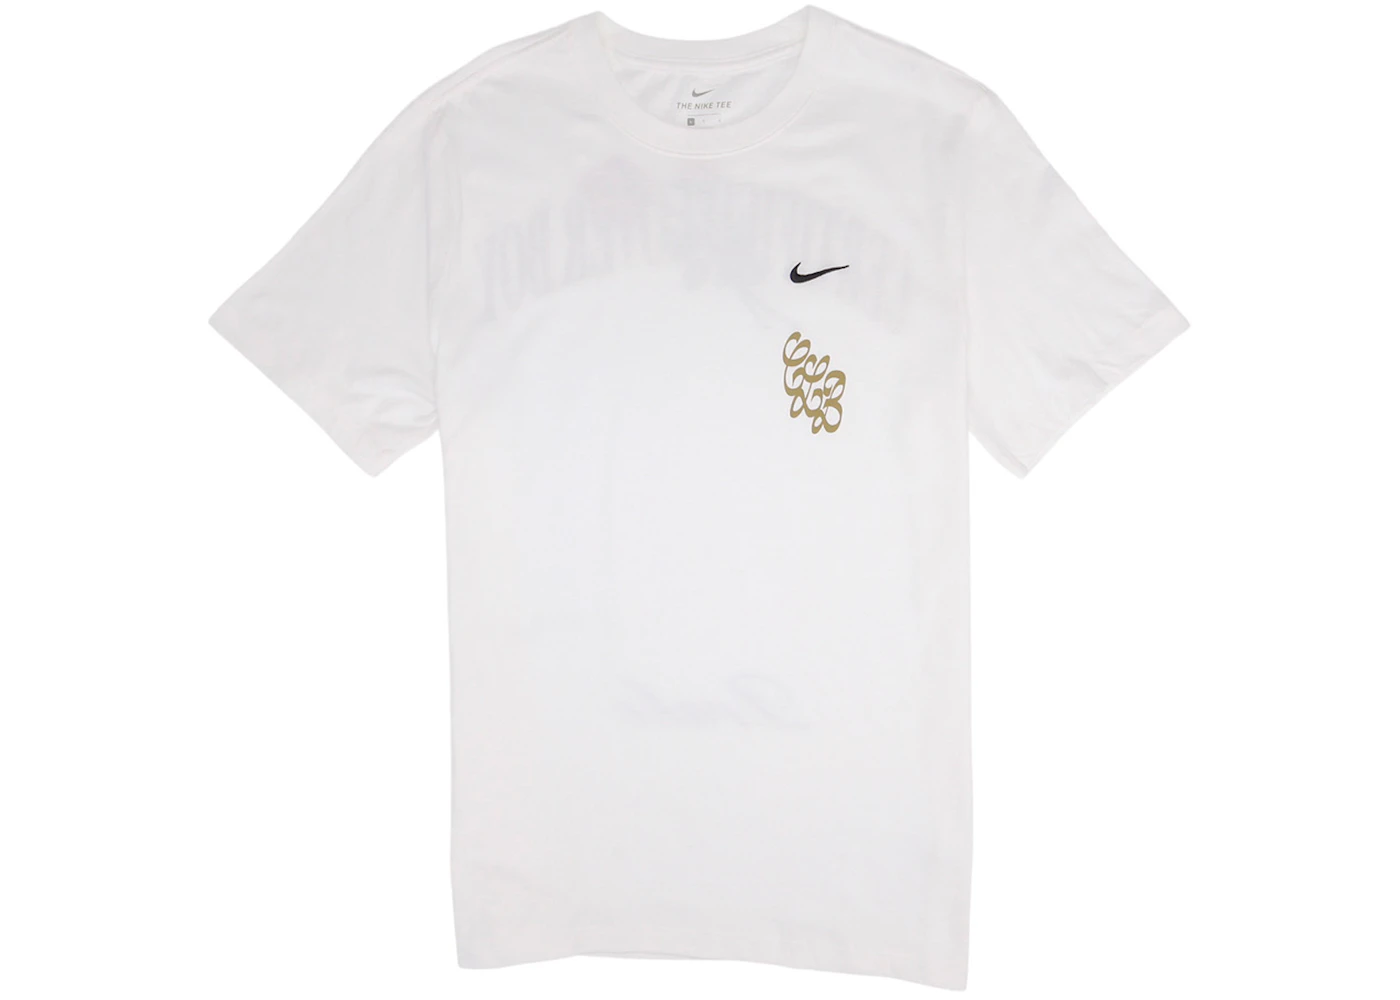 Nike x Drake Certified Lover Boy Rose T-Shirt White Men's - FW20 - US